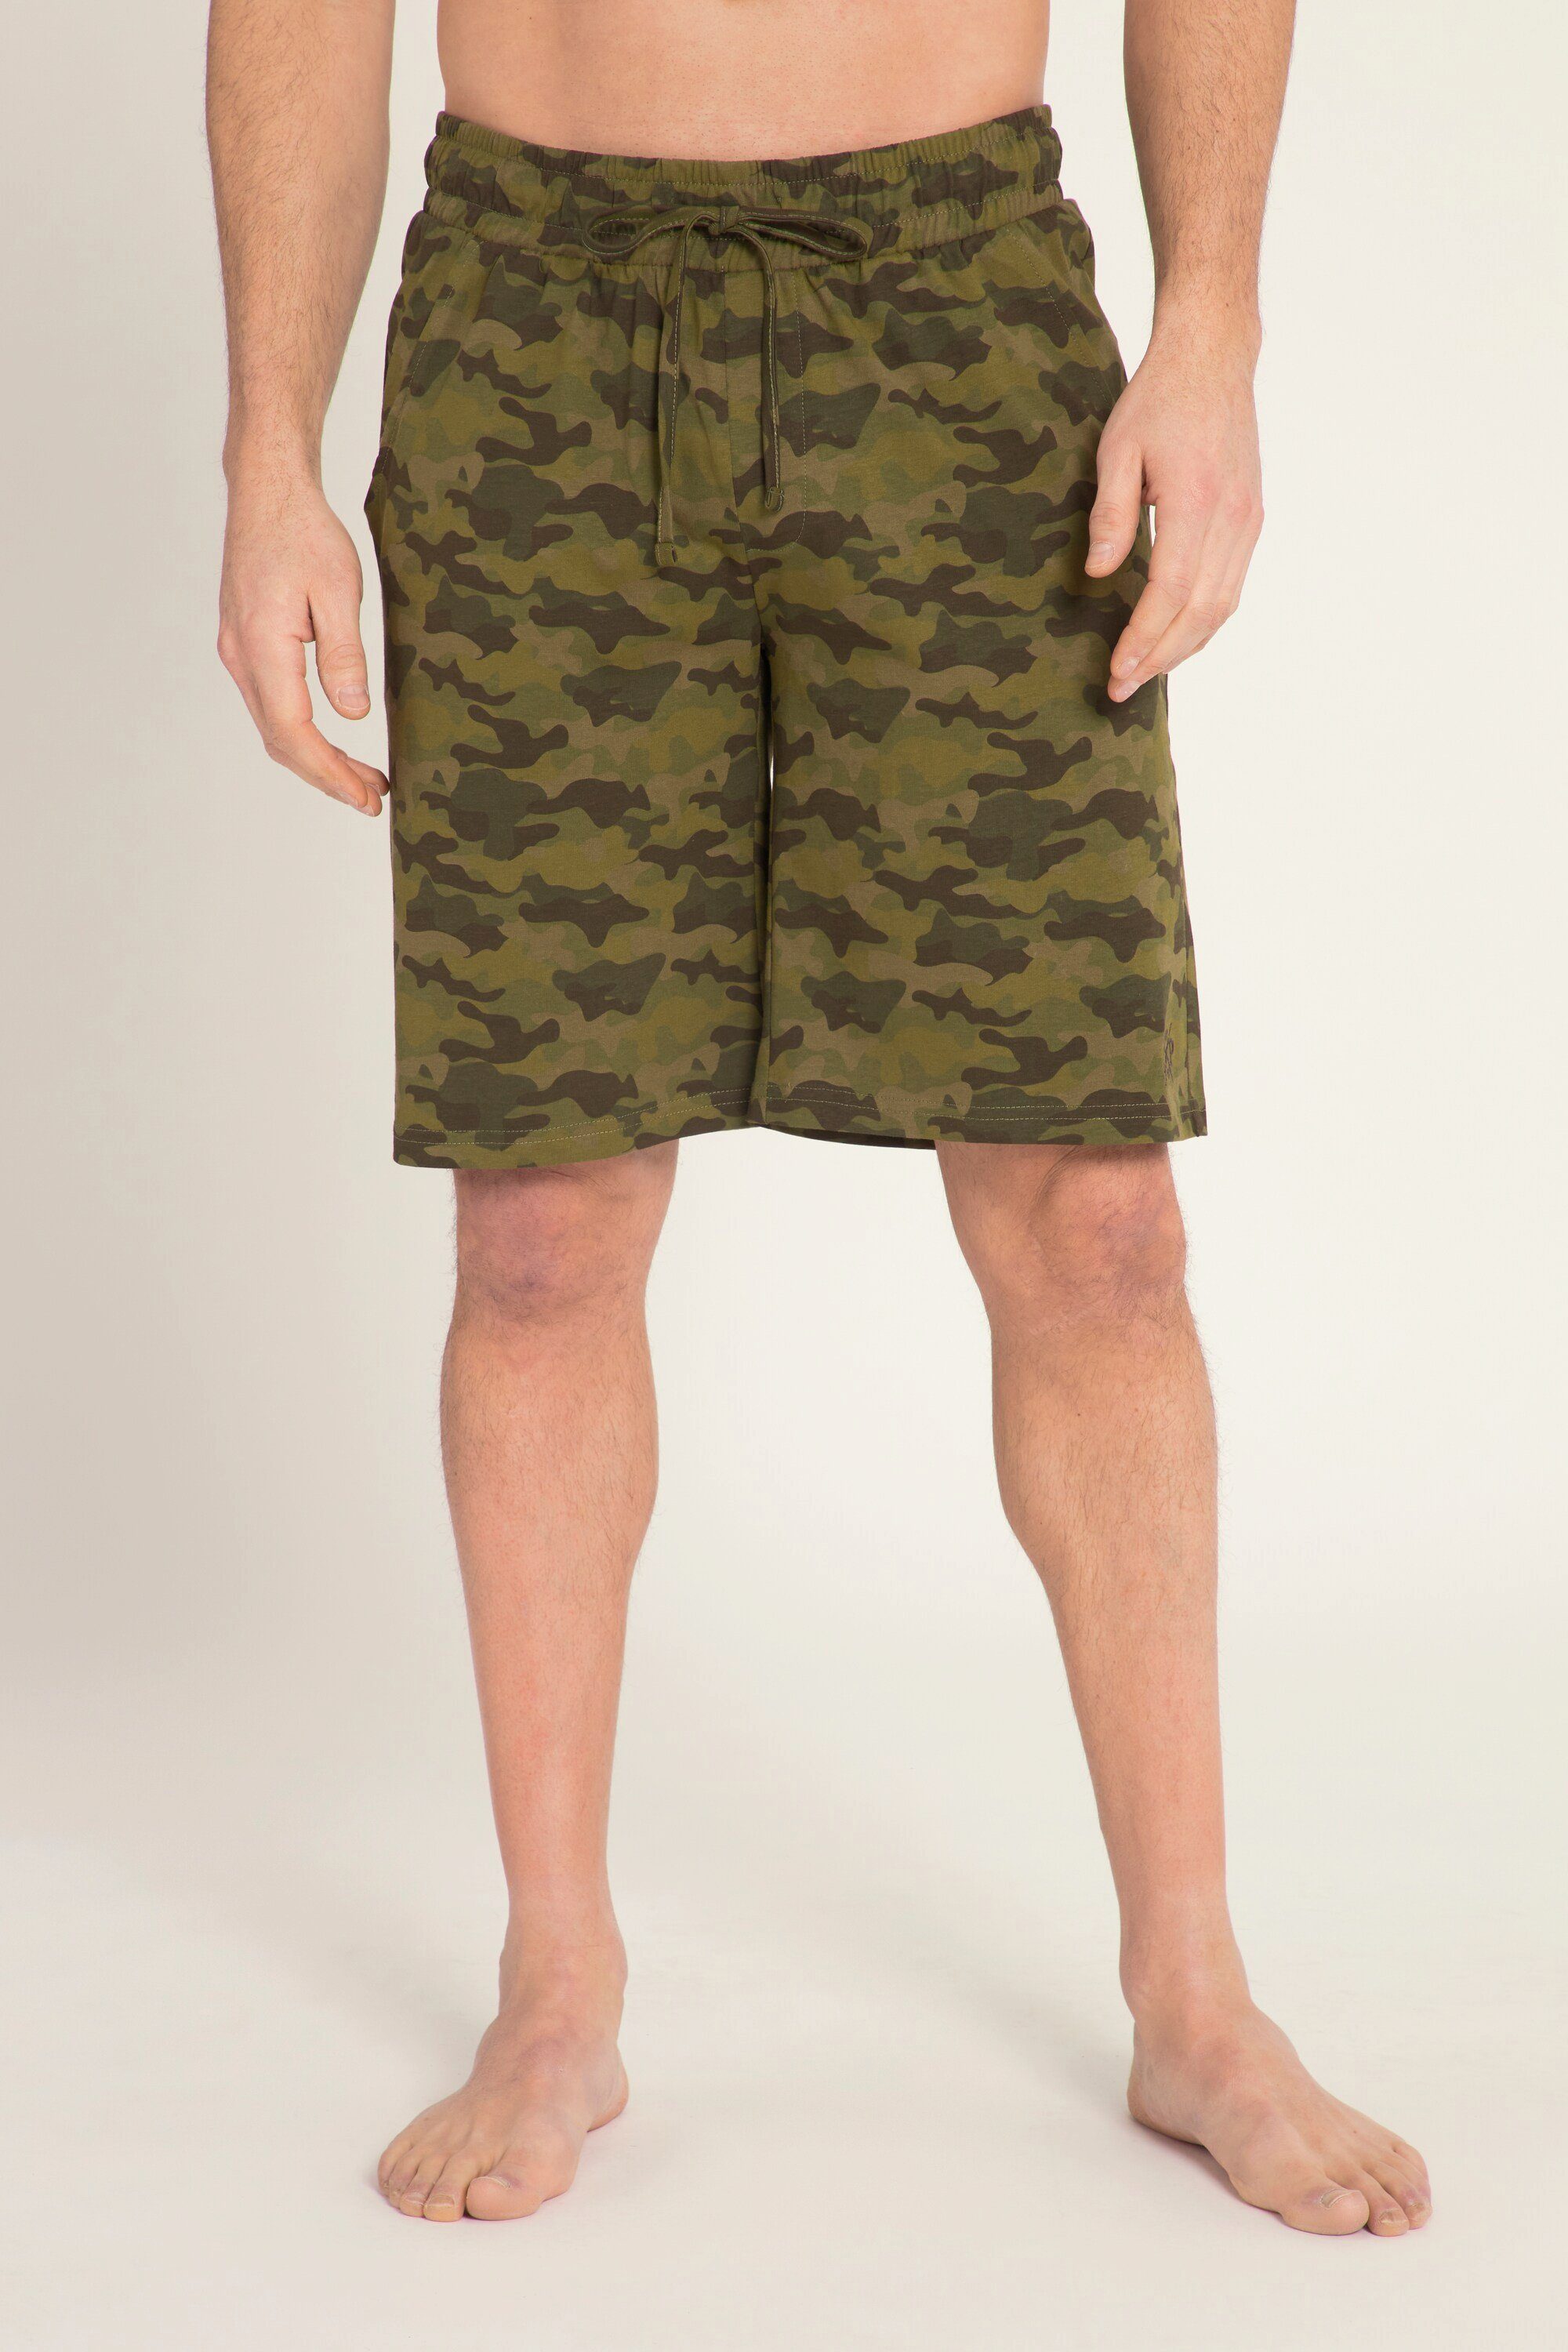 JP1880 Schlafanzug Bermuda Shorts Camouflage Print Elastikbund